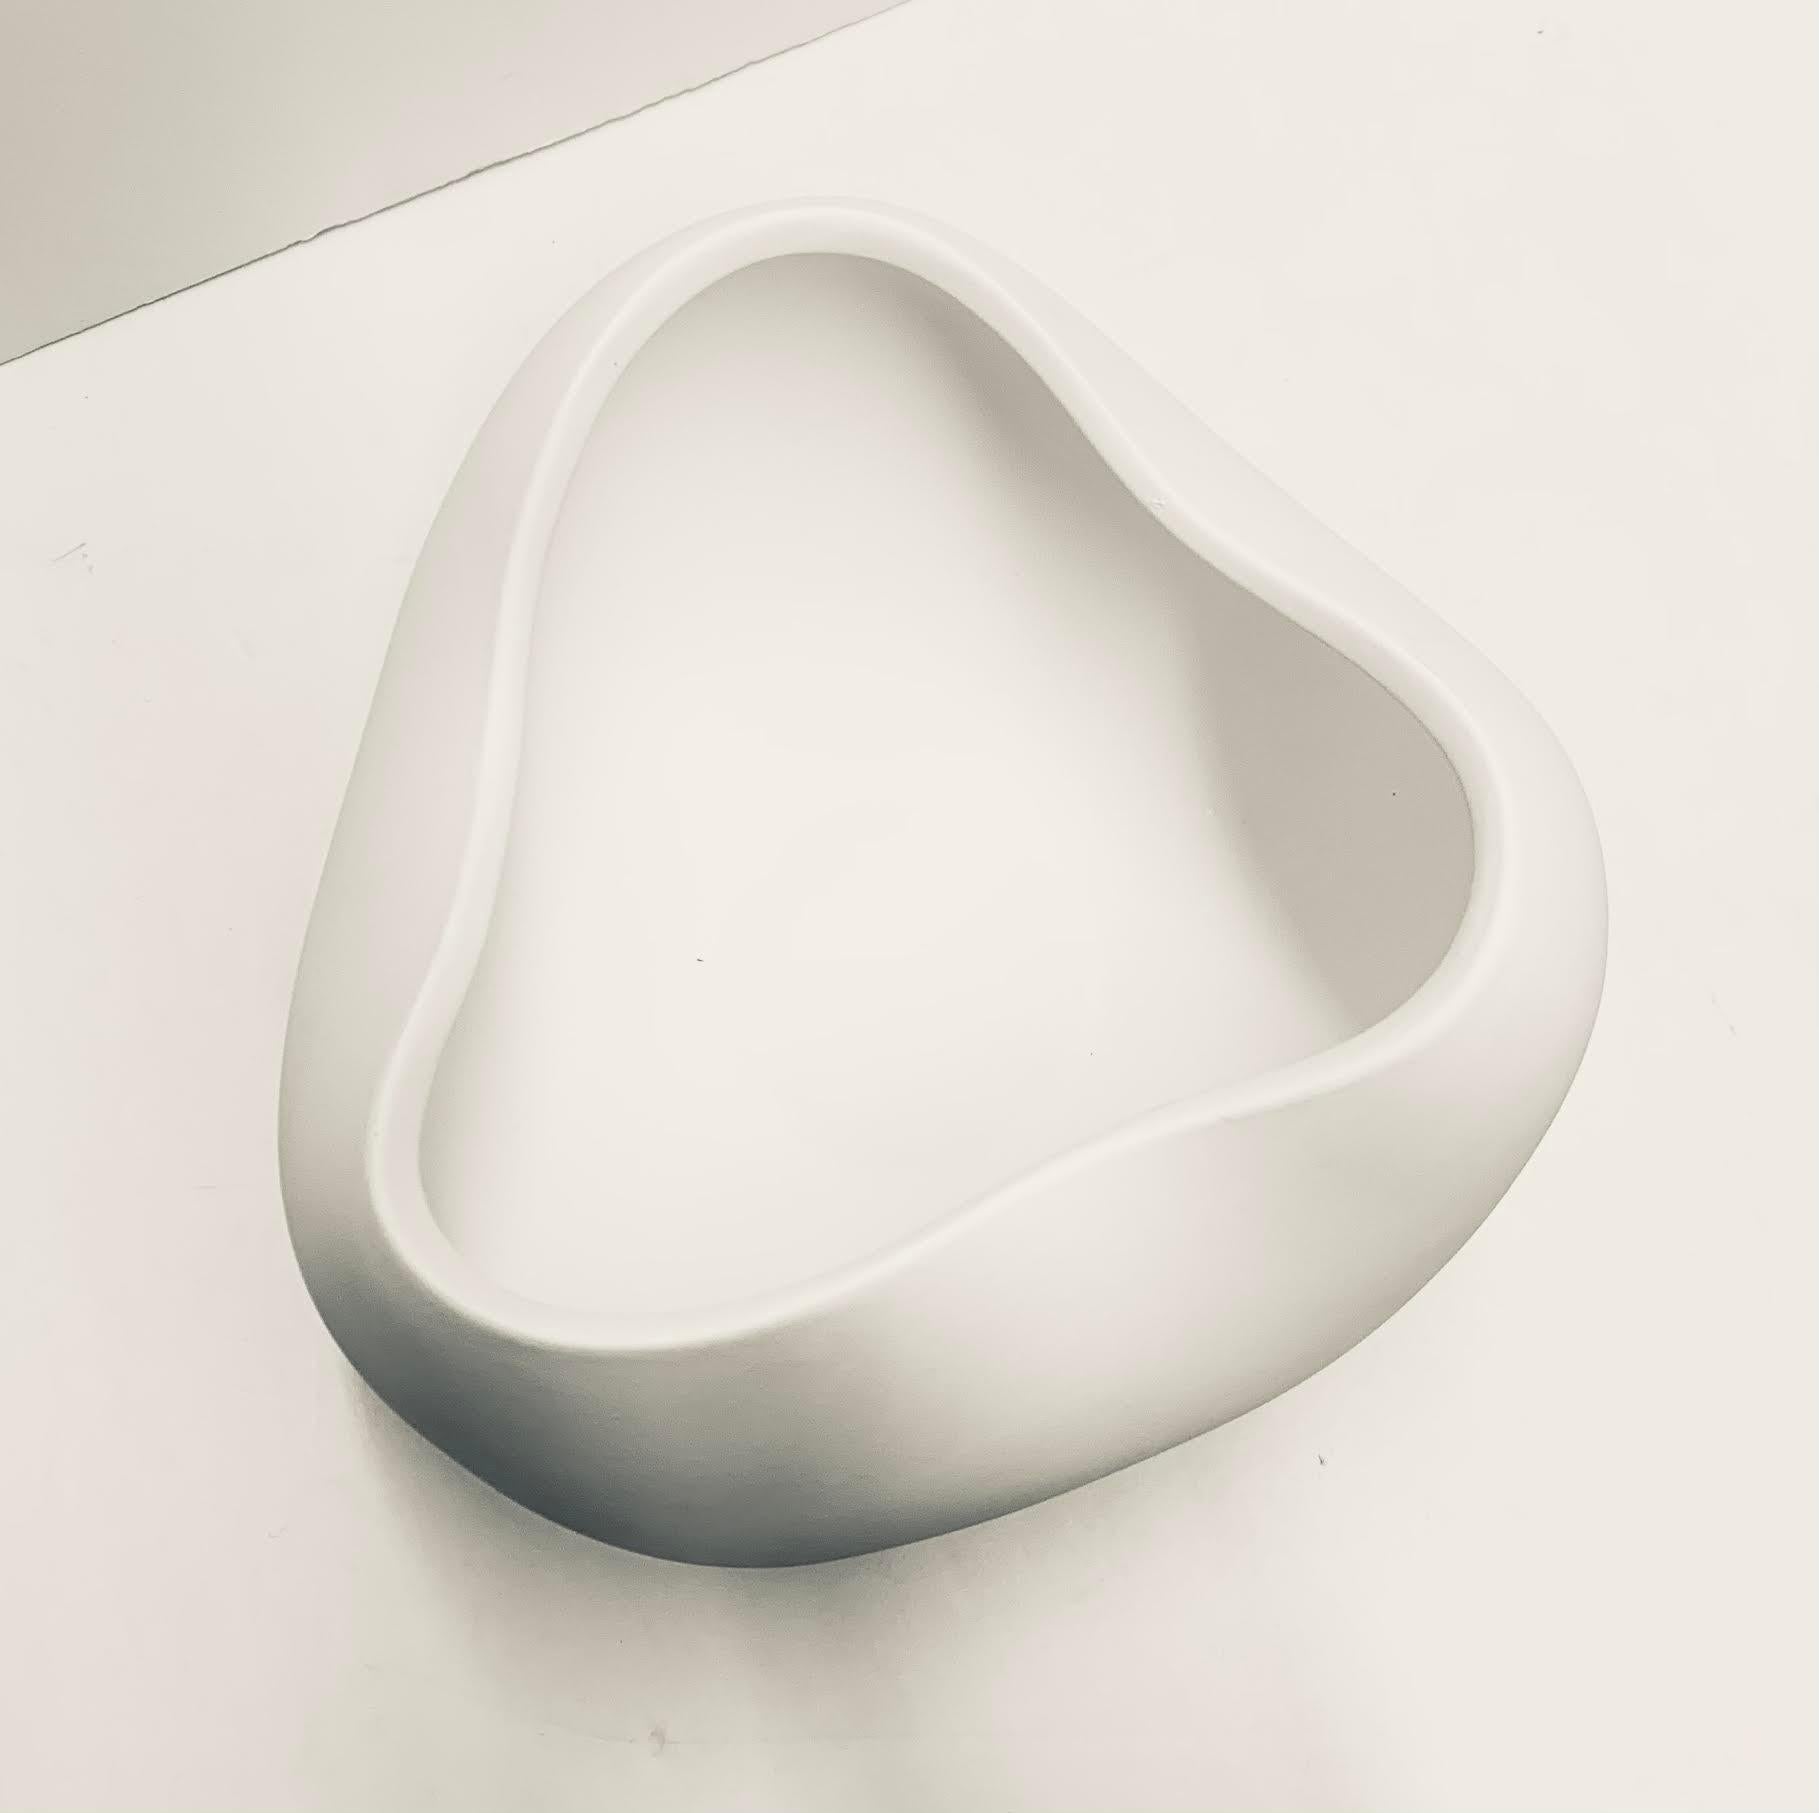 Weiße, glatte Oberfläche, gebogene Schale im dänischen Design, China, Contemporary (Chinesisch)